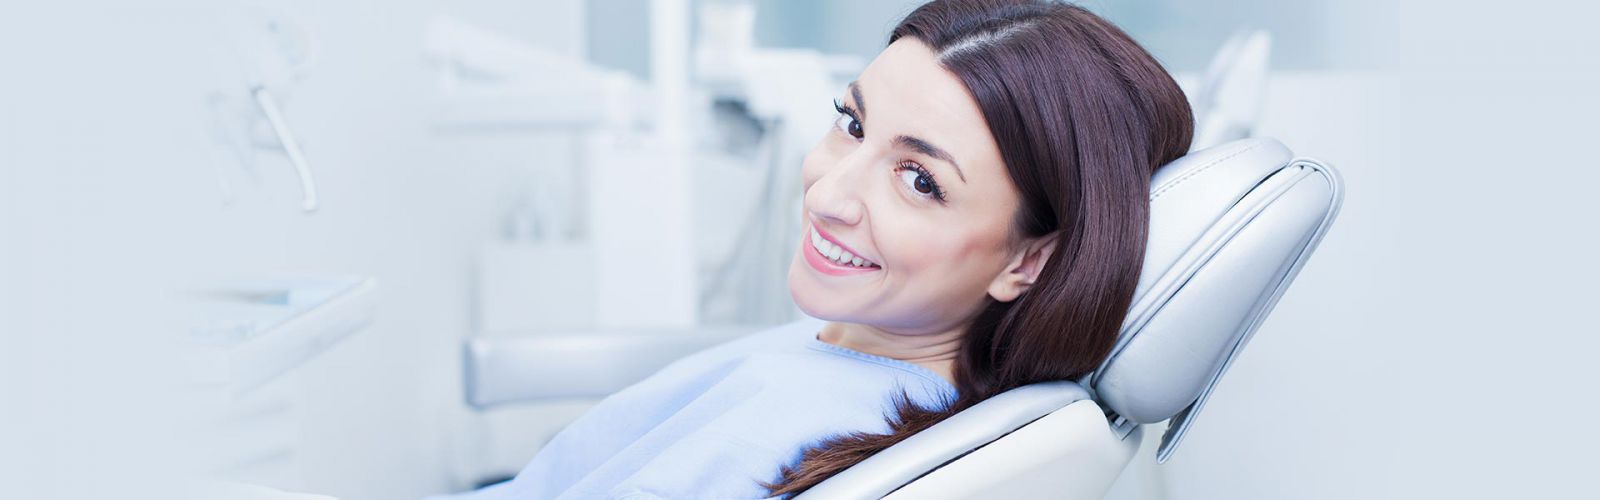 dịch vụ niềng răng - chỉnh nha tại nha khoa Tâm Như